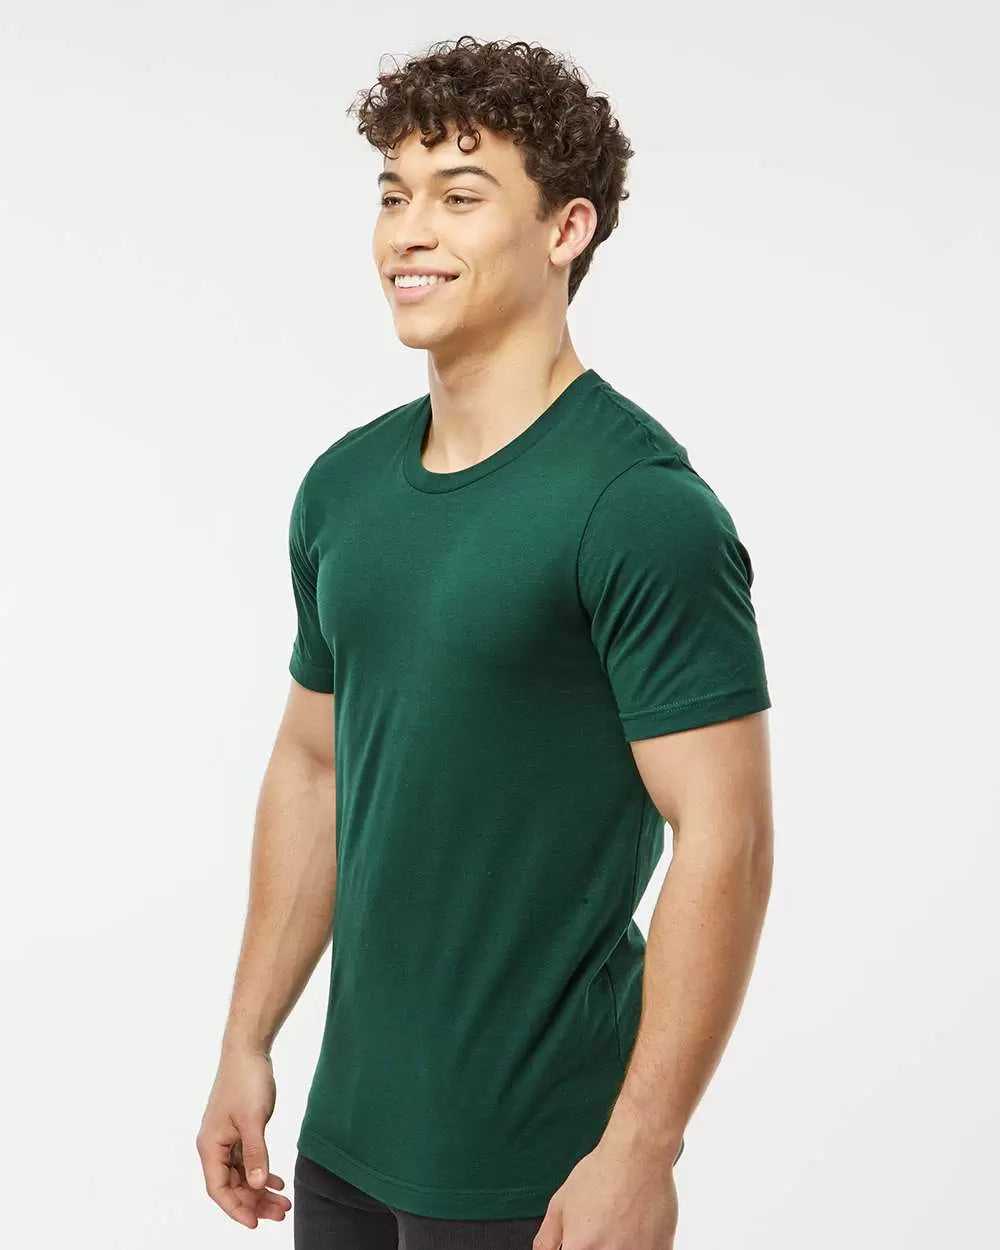 Tultex 502 Premium Cotton T-Shirt - Forest - HIT a Double - 2